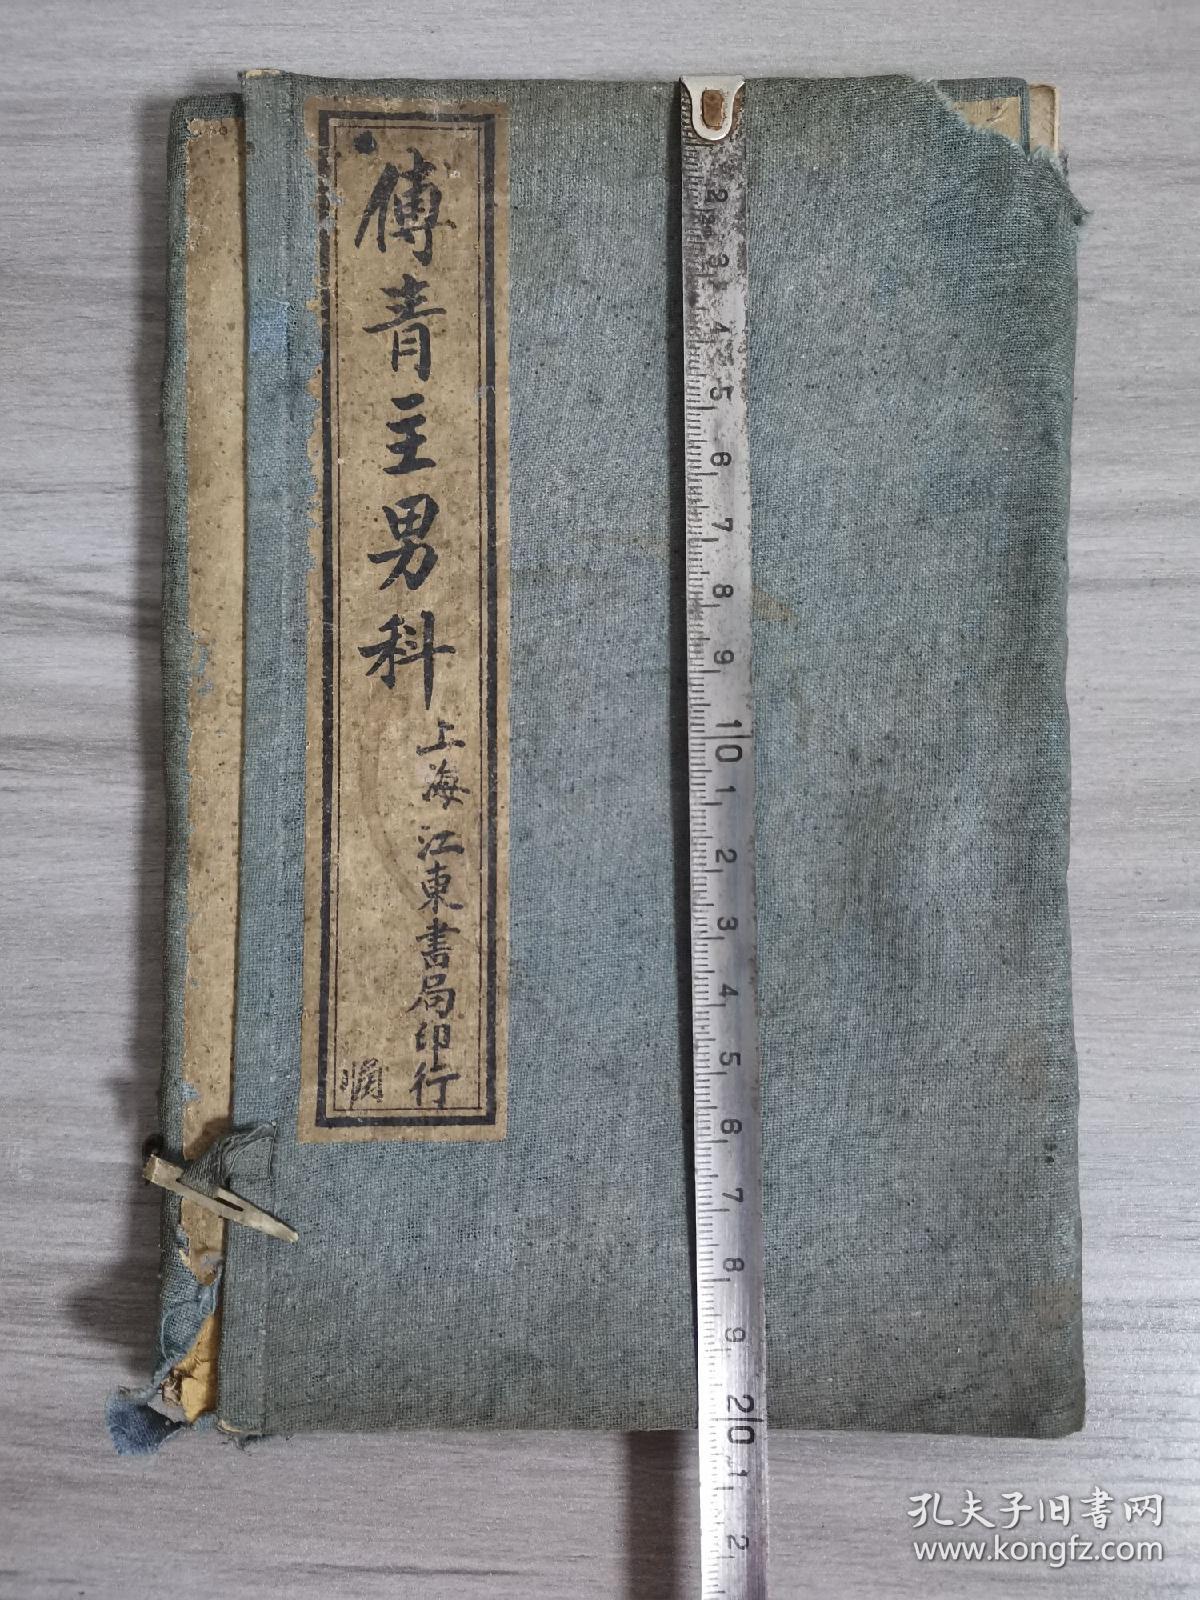 民国元年上海江东书局石印（傅青主男科和女科）2册全。品相好。如图包老